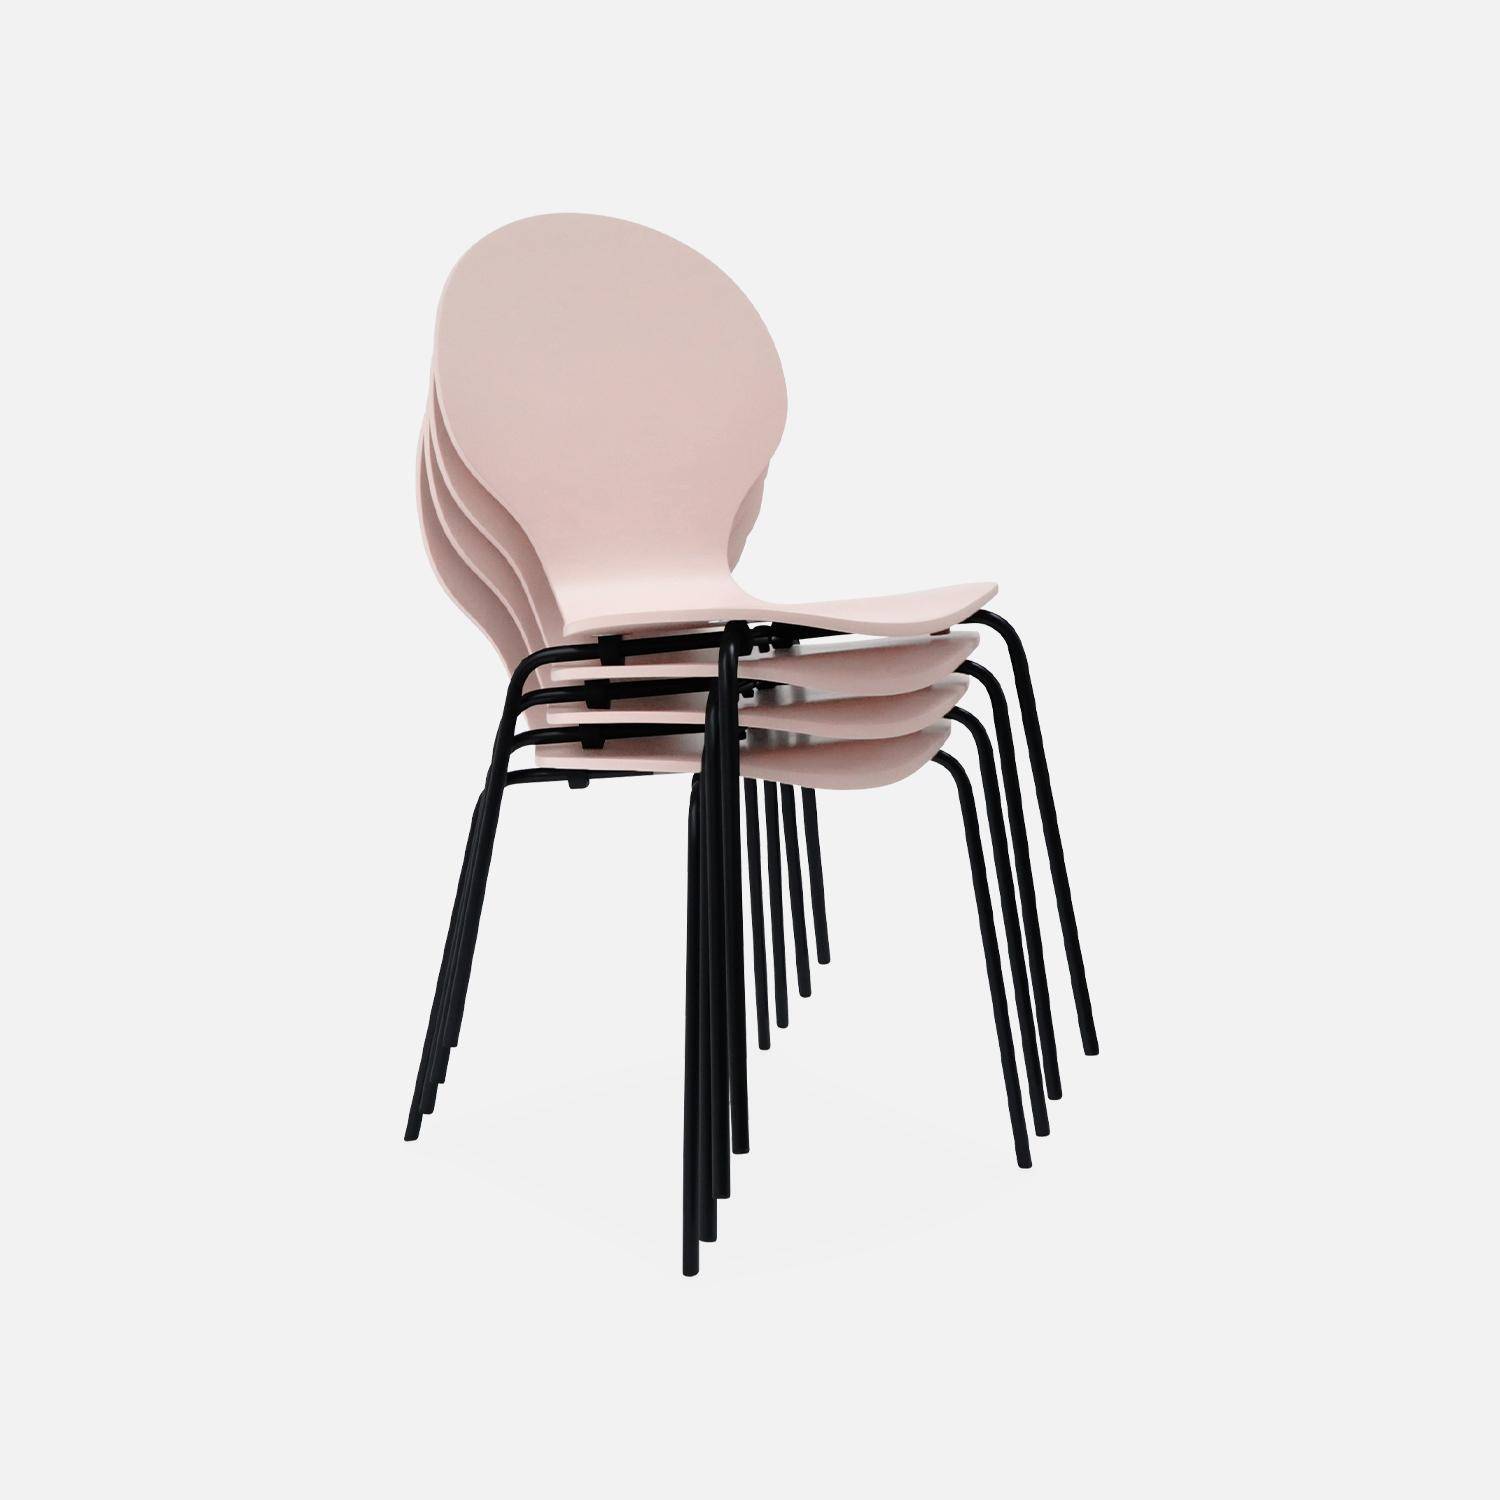 Juego de 4 sillas apilables retro rosa, madera de hevea y contrachapada, patas de acero, Naomi, A 43 x P 48 x Alt 87cm,sweeek,Photo6